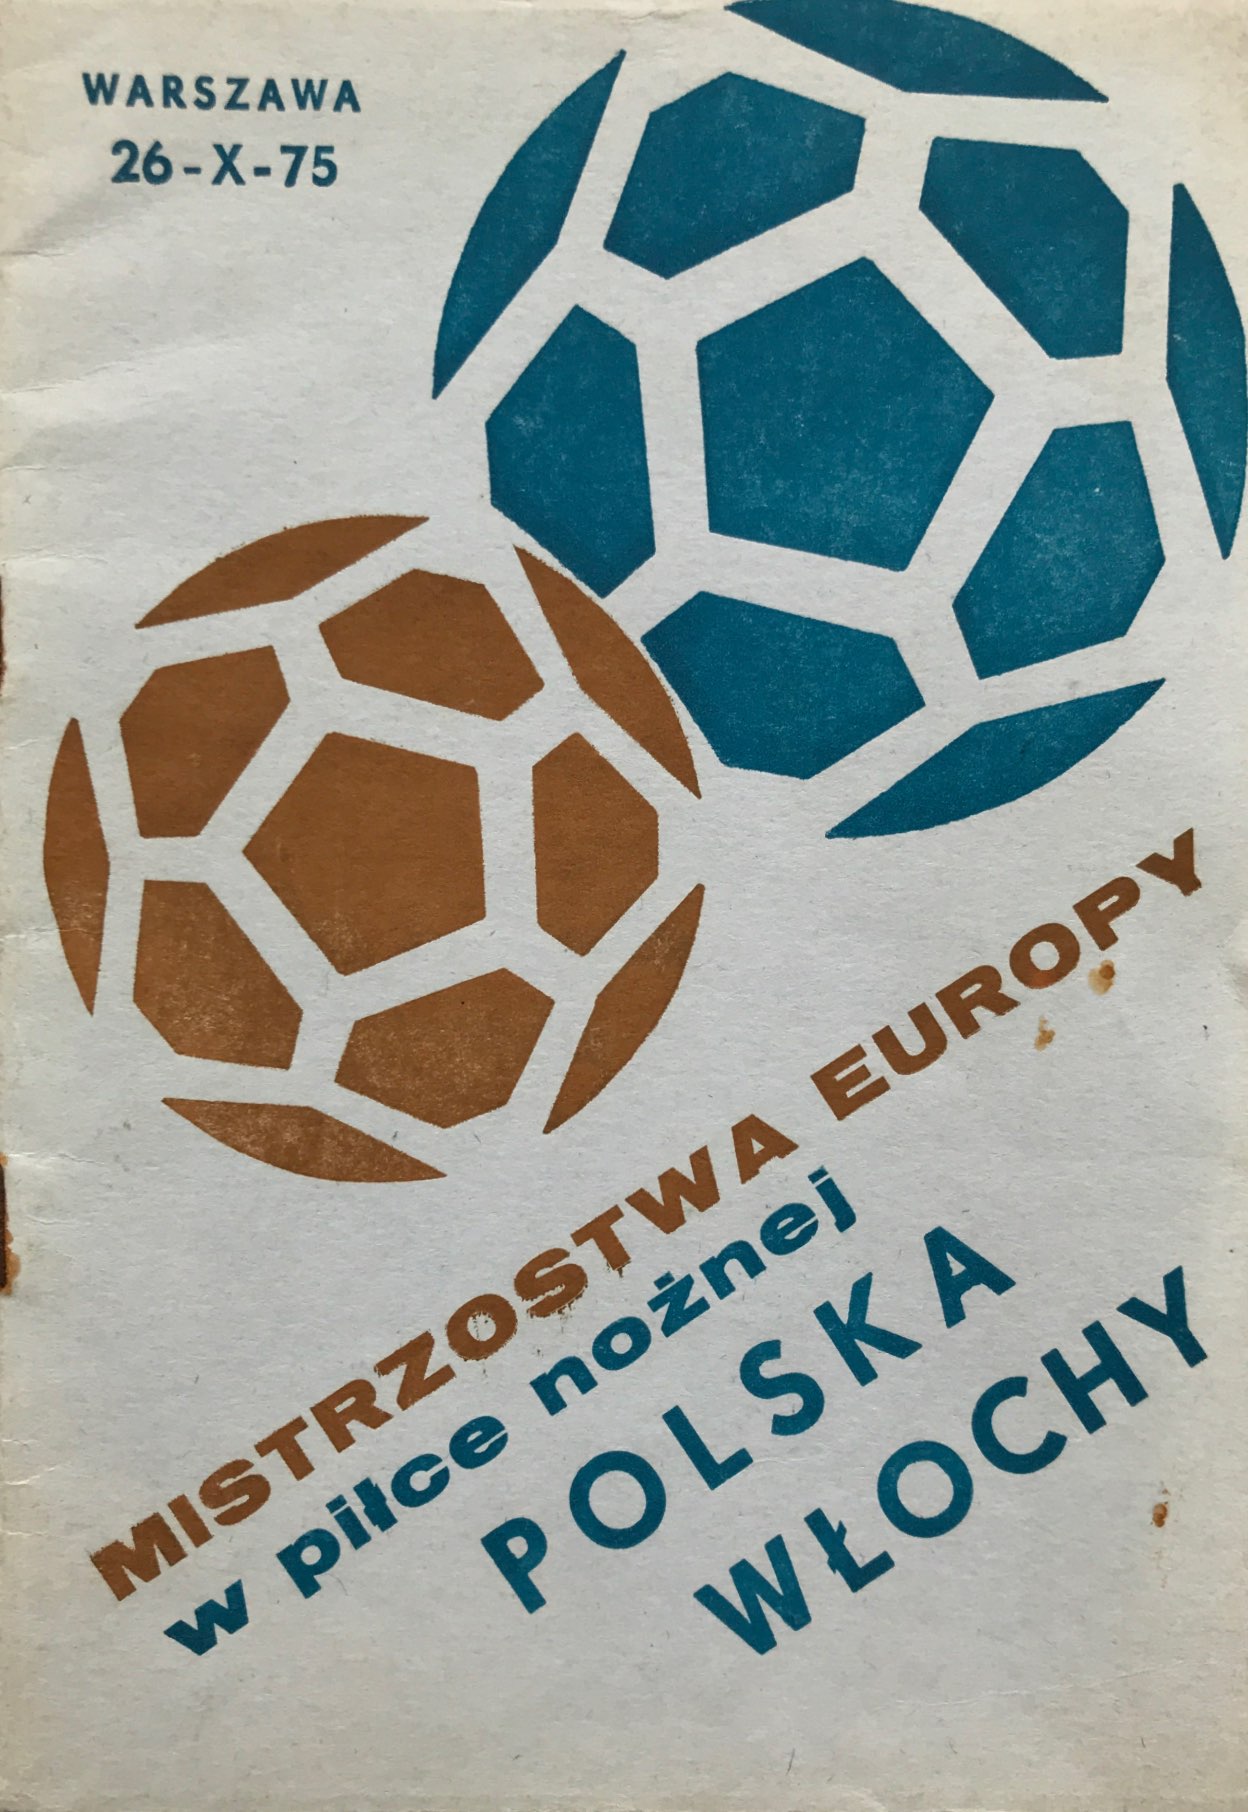 Program meczowy Polska - Włochy 0:0 (26.10.1975).